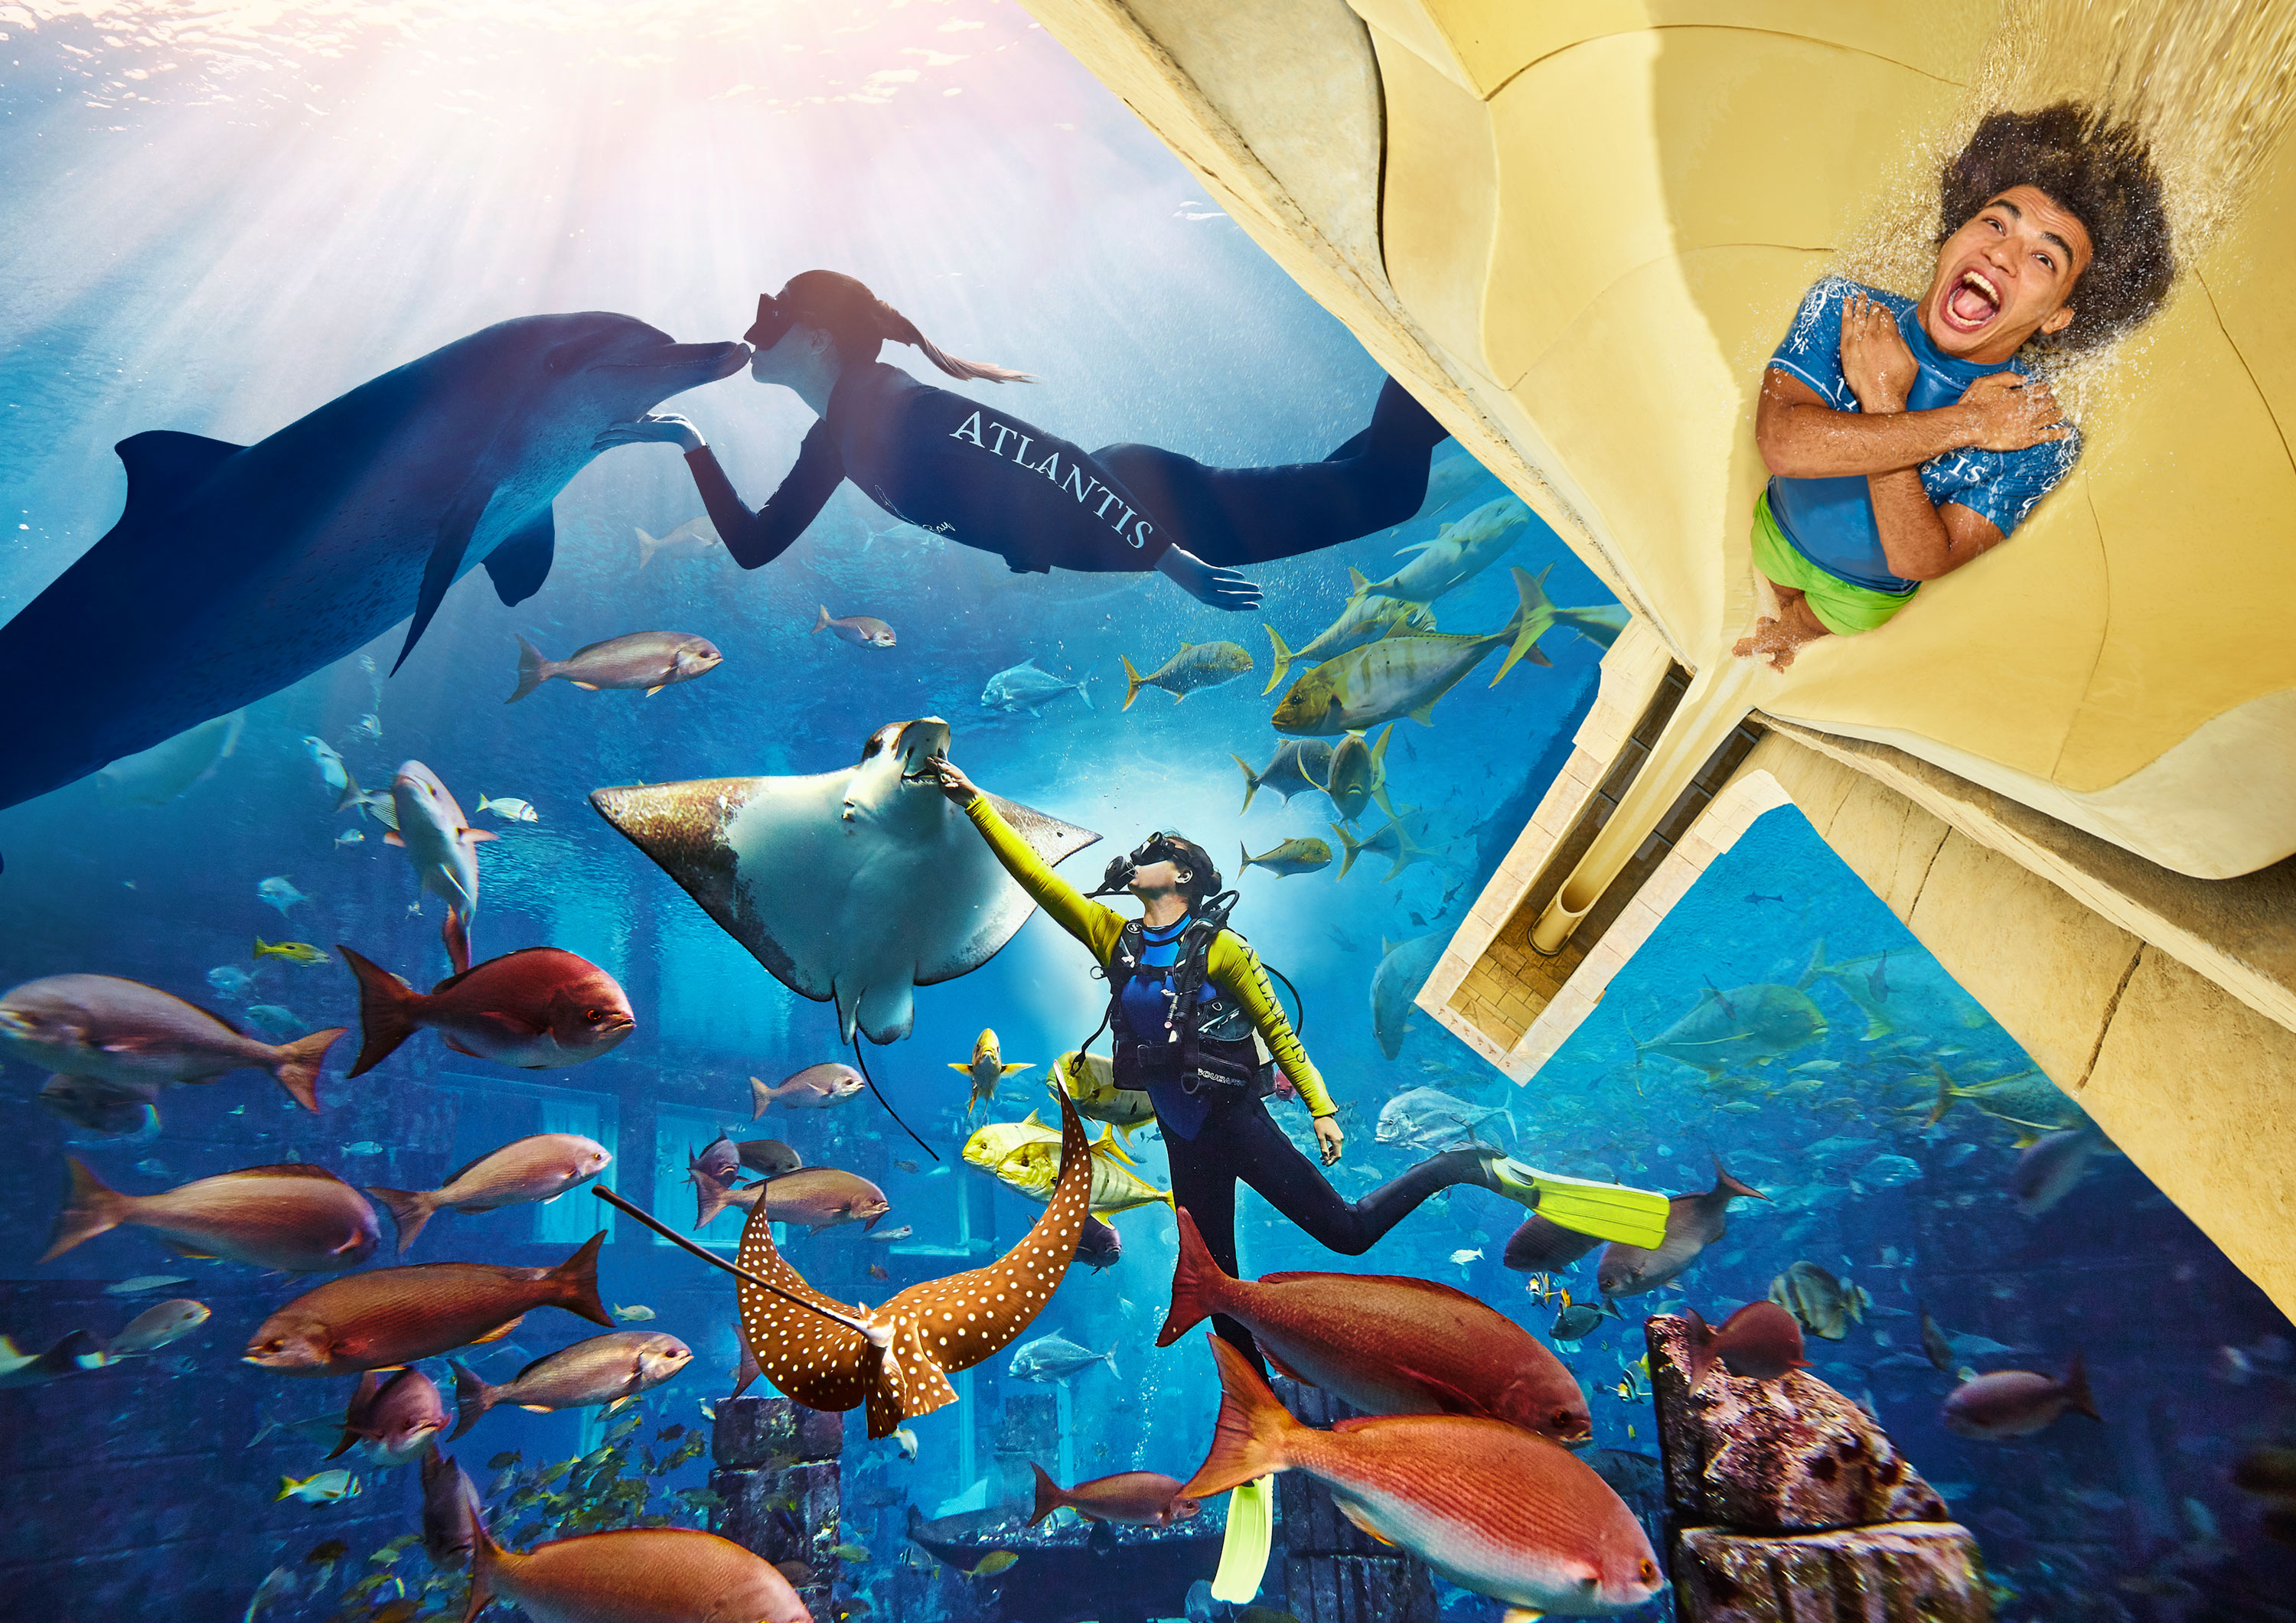 Atlantis Aquaventure Waterpark & Lost Chamber